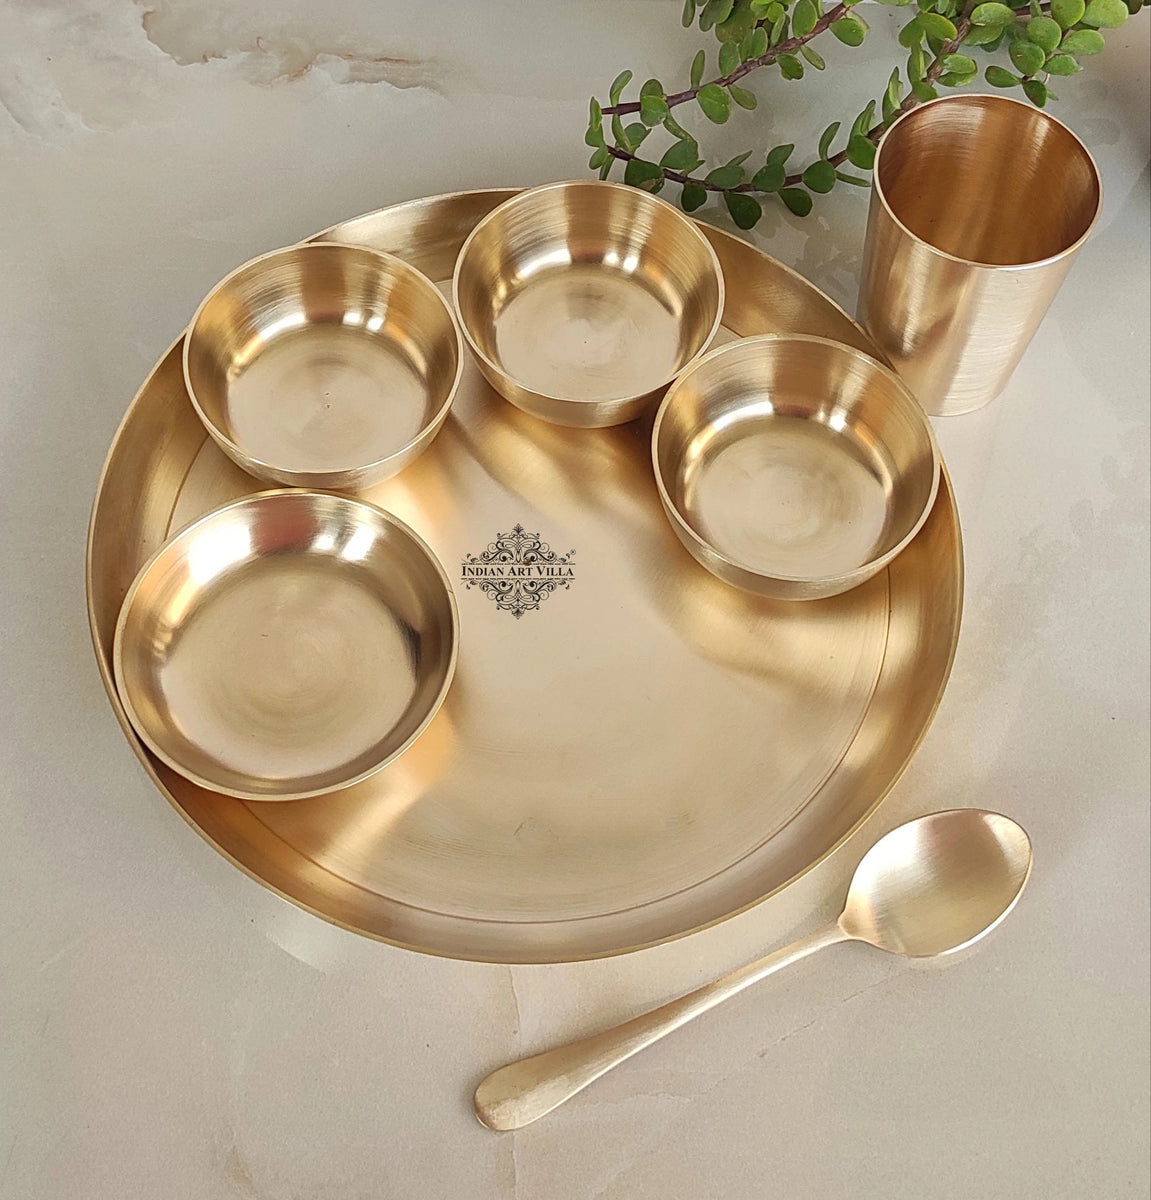 Thirteenkcanddle Brass Dinner Thali Set, 7 Pcs, Golden – Thirteenkcanddle